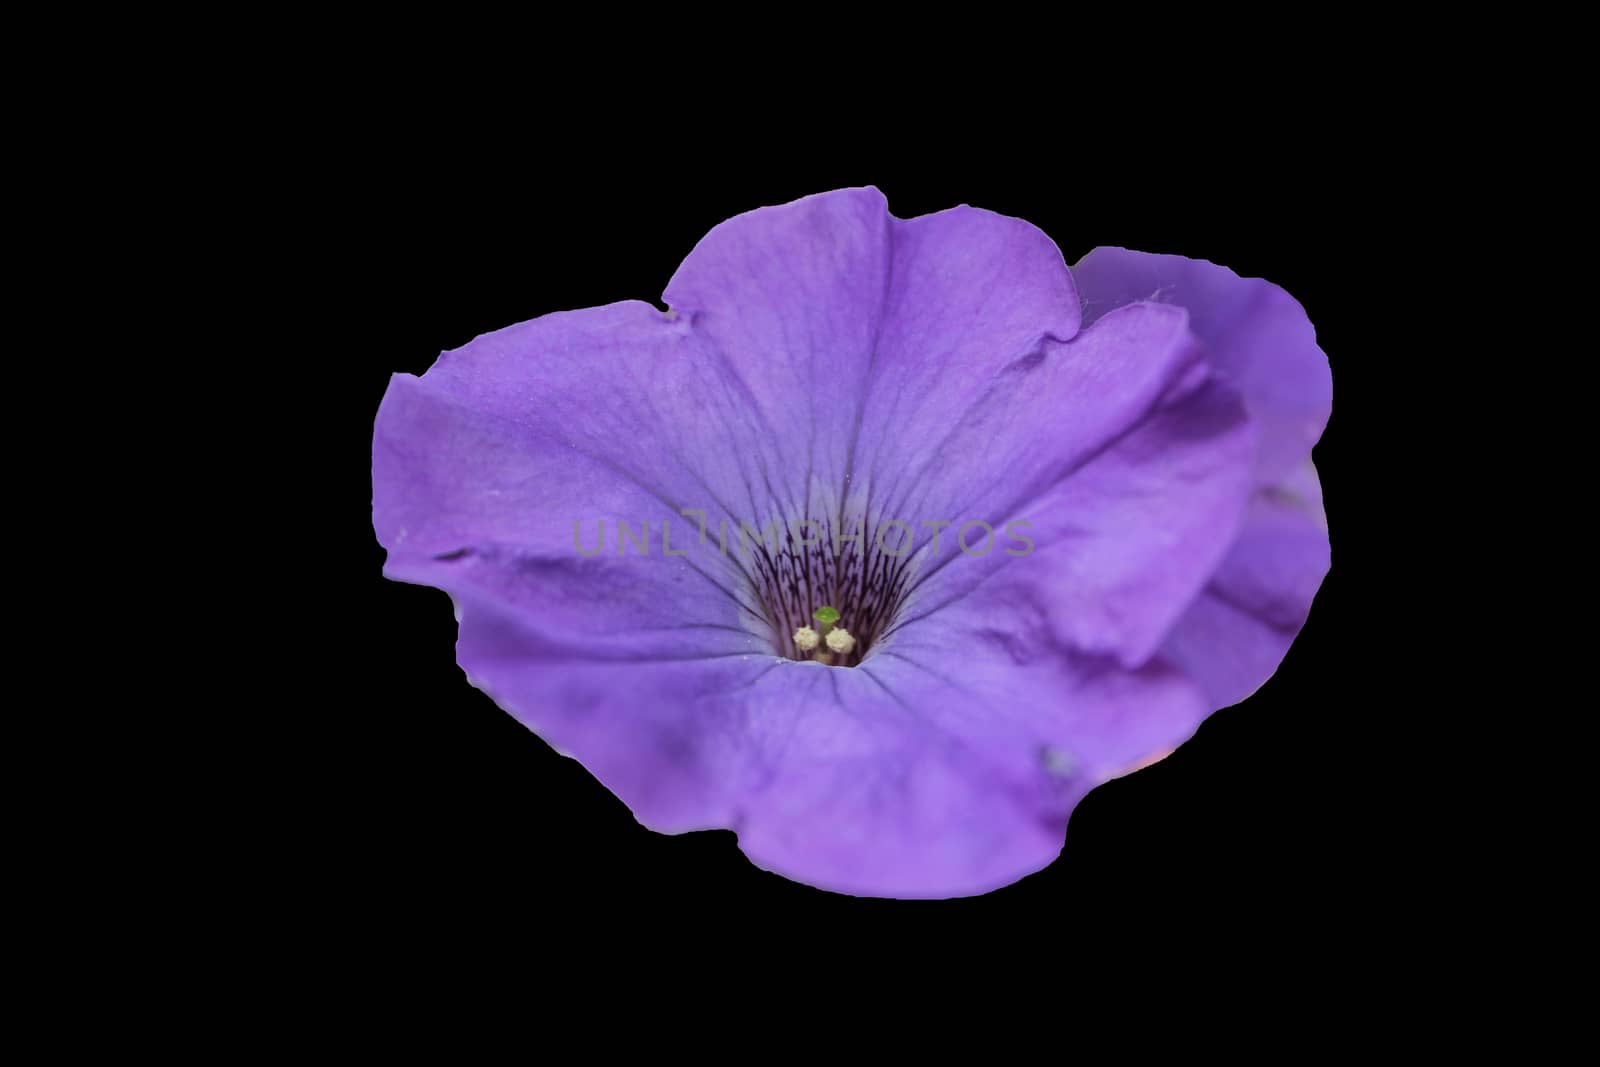 Violet-pink clematis, flower, nature.